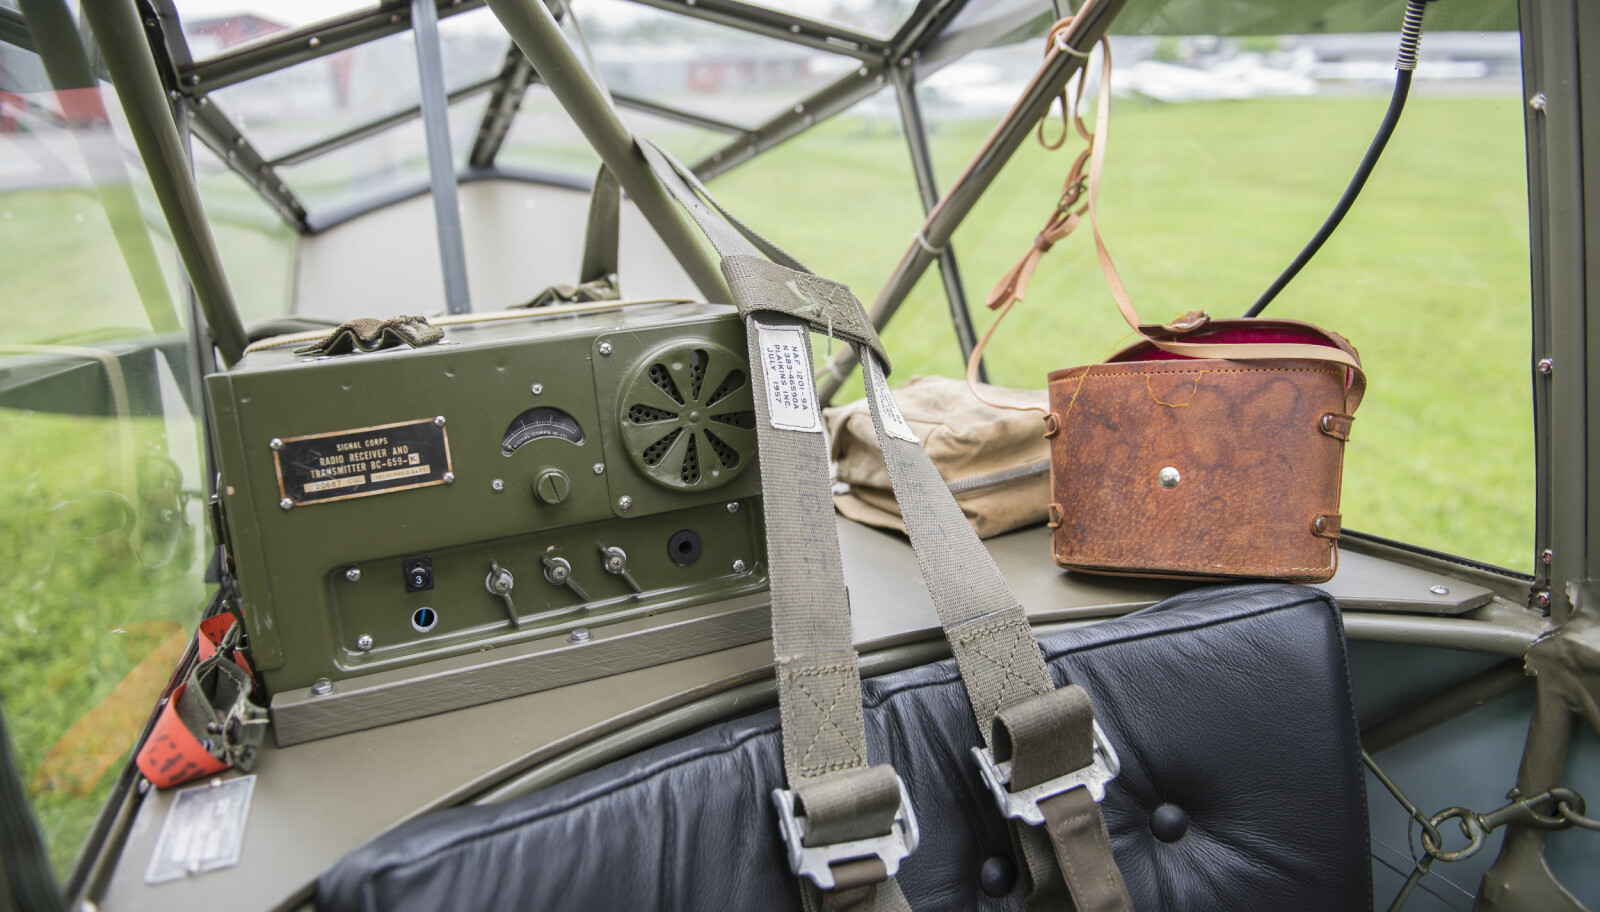 <b>AUTENTISK:</b> Per Anders Johnsen har fått tak i en original SCR-610 radio som sitter bak ryggen til piloten. Autentisk førstehjelpsskrin og pilot-bag hører også med til utrustningen.